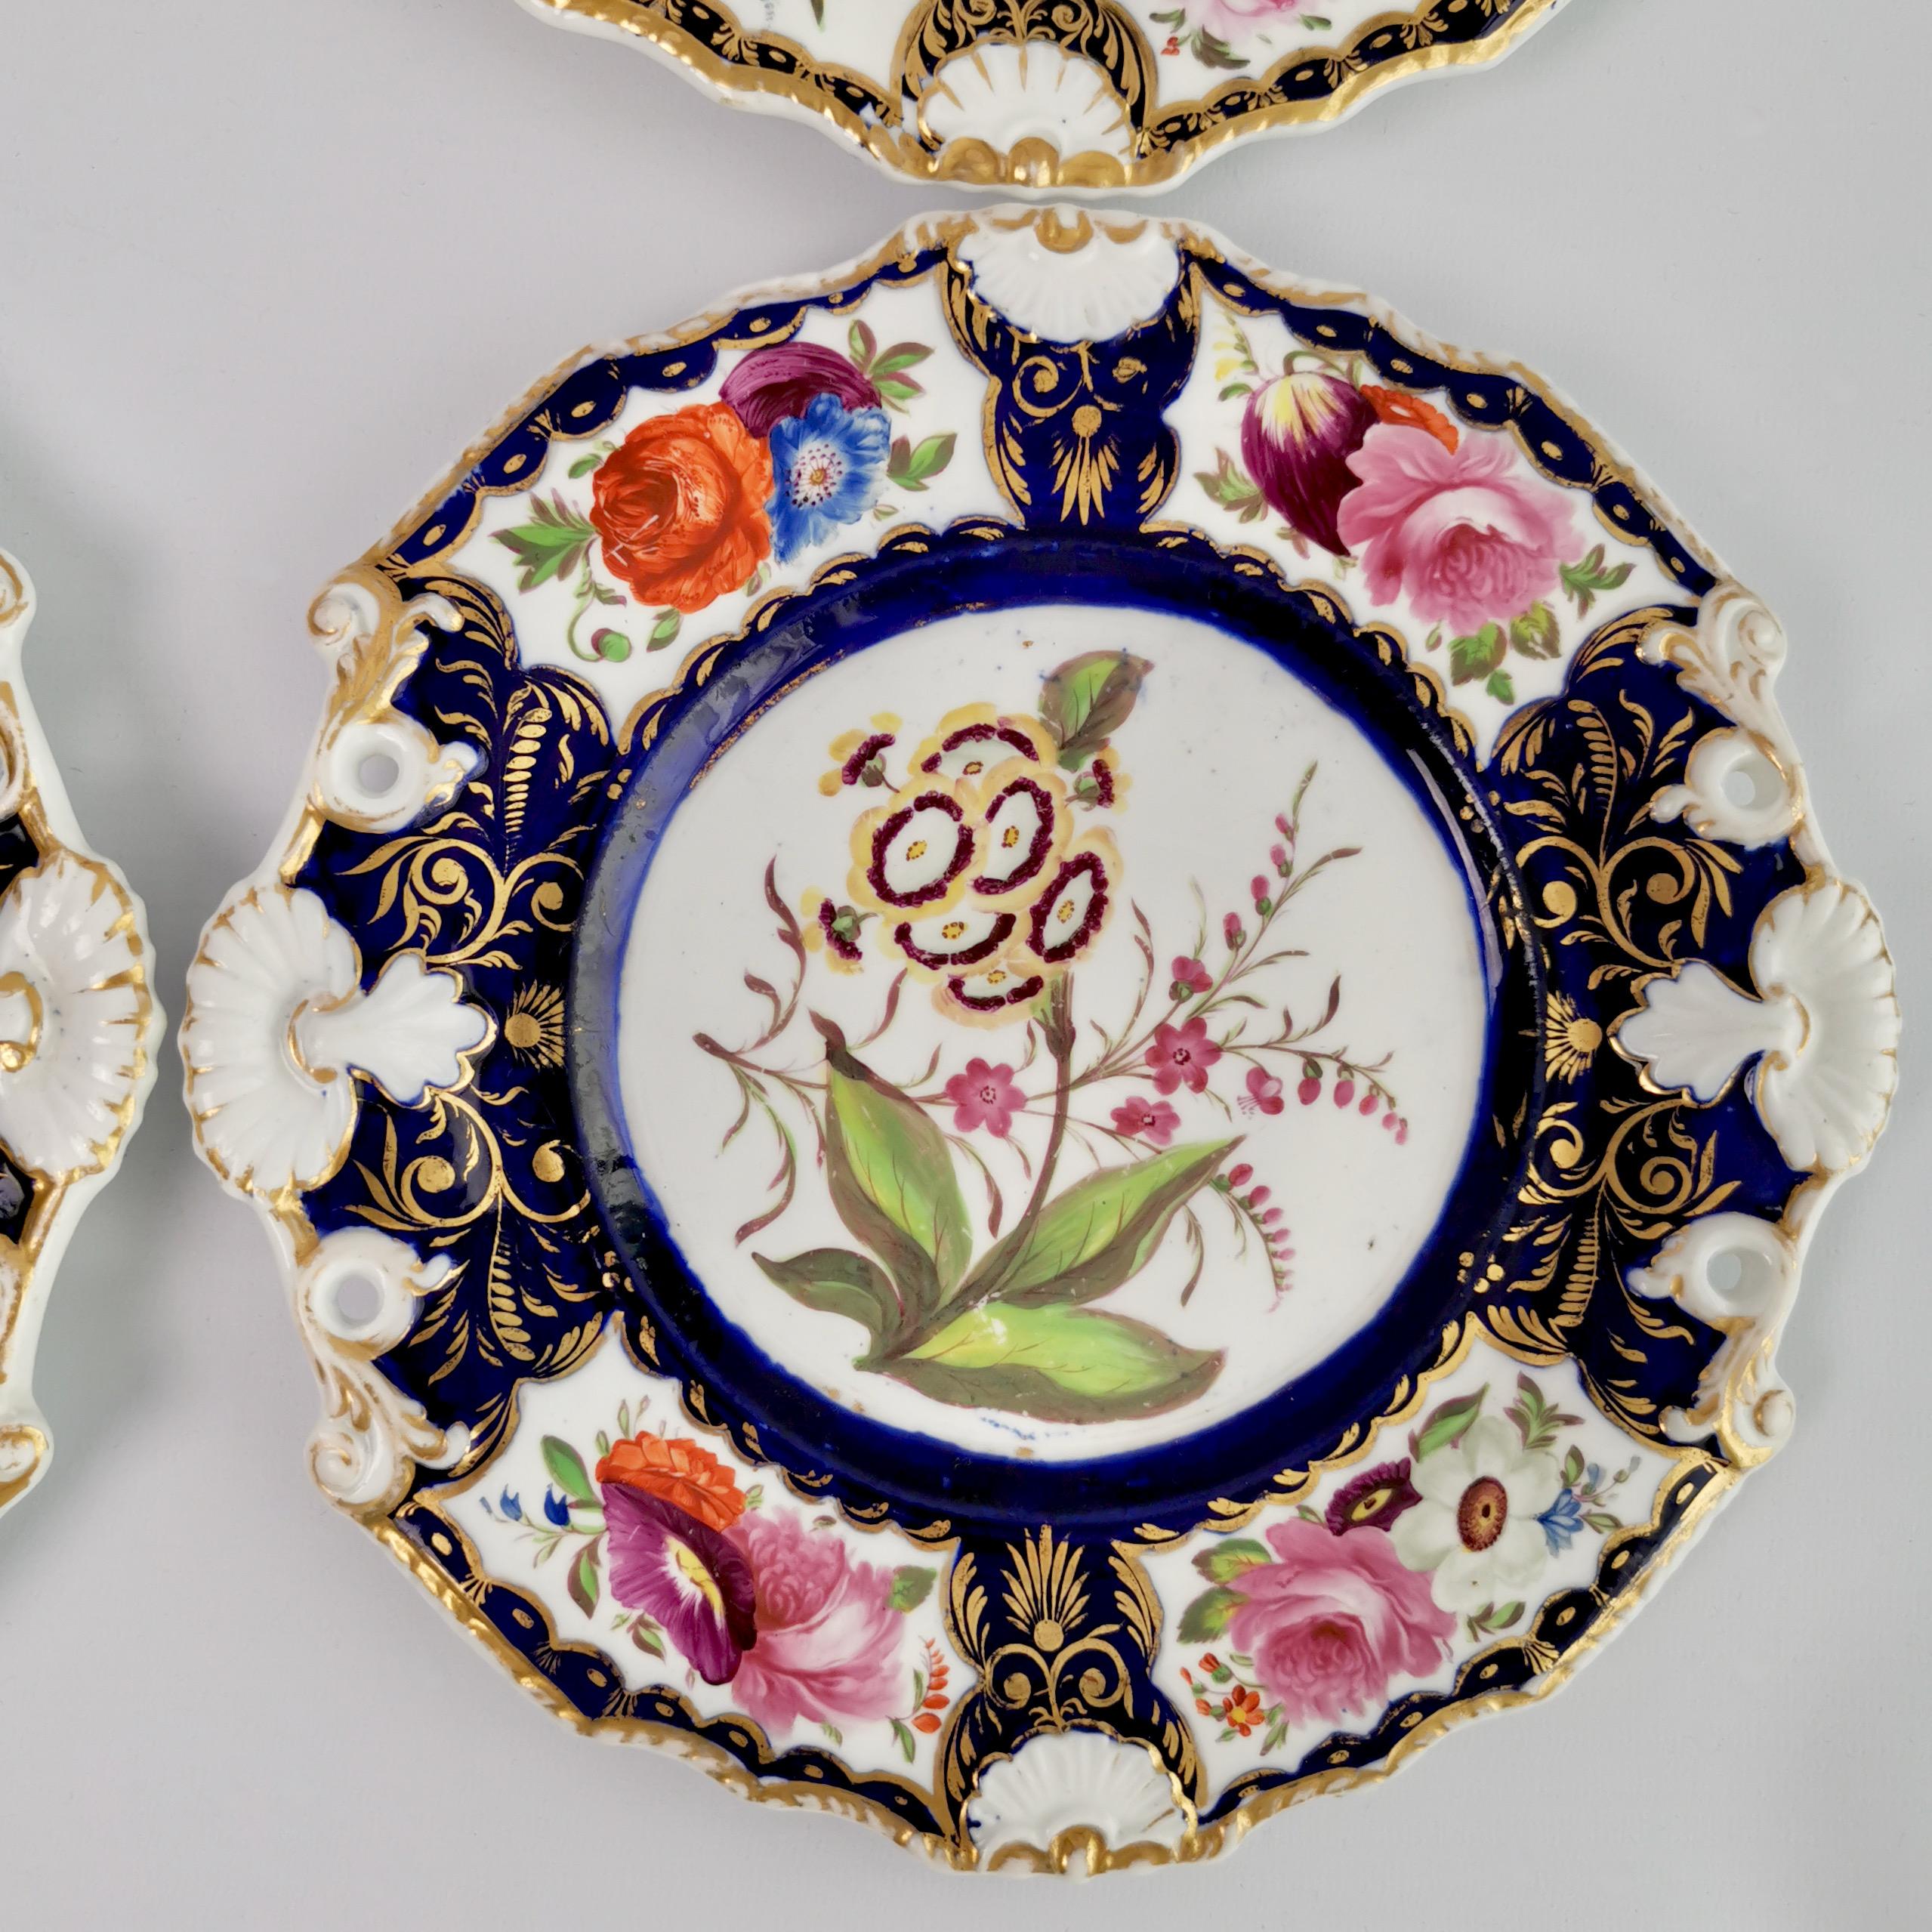 New Hall Porcelain Dessert Service, Cobalt Blue with Flowers, Regency 1824-1830 12